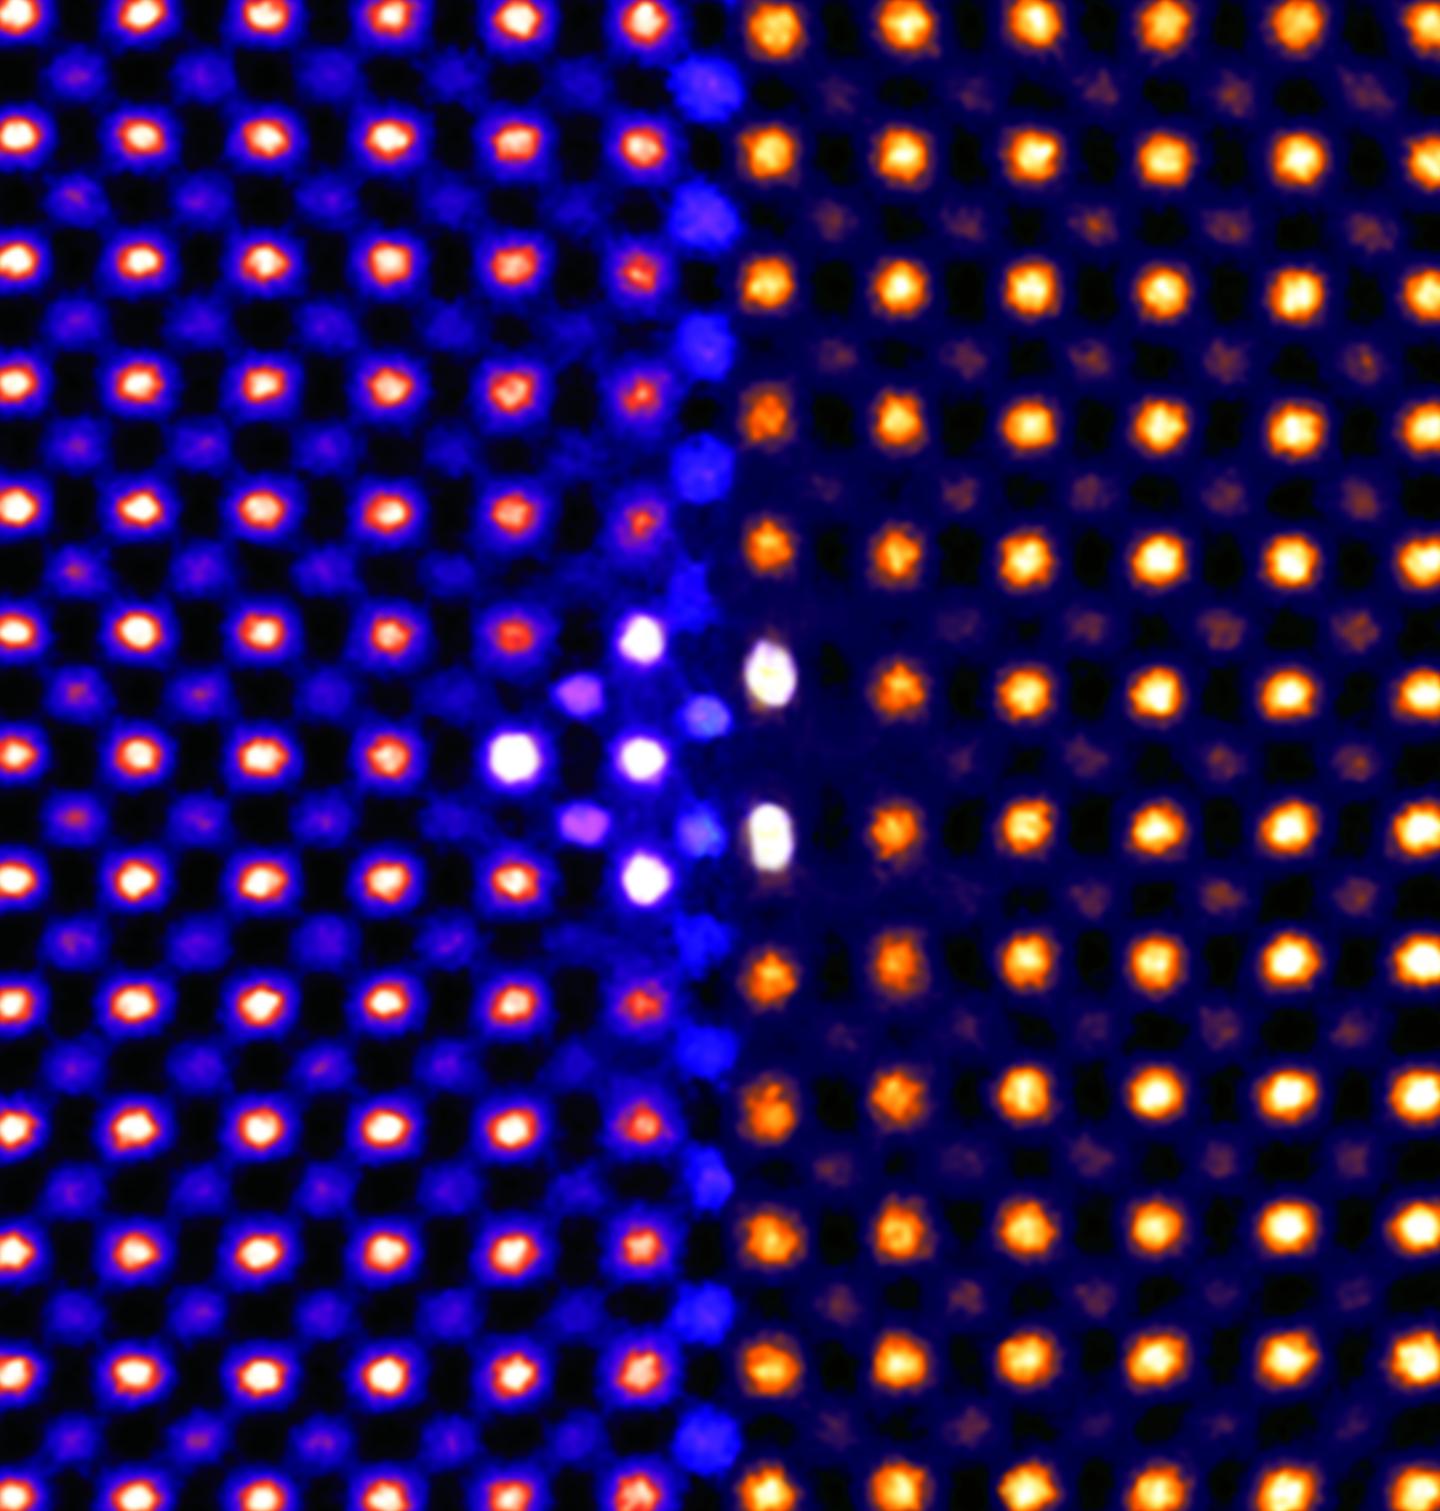 Nano-Image of Shifting Atoms